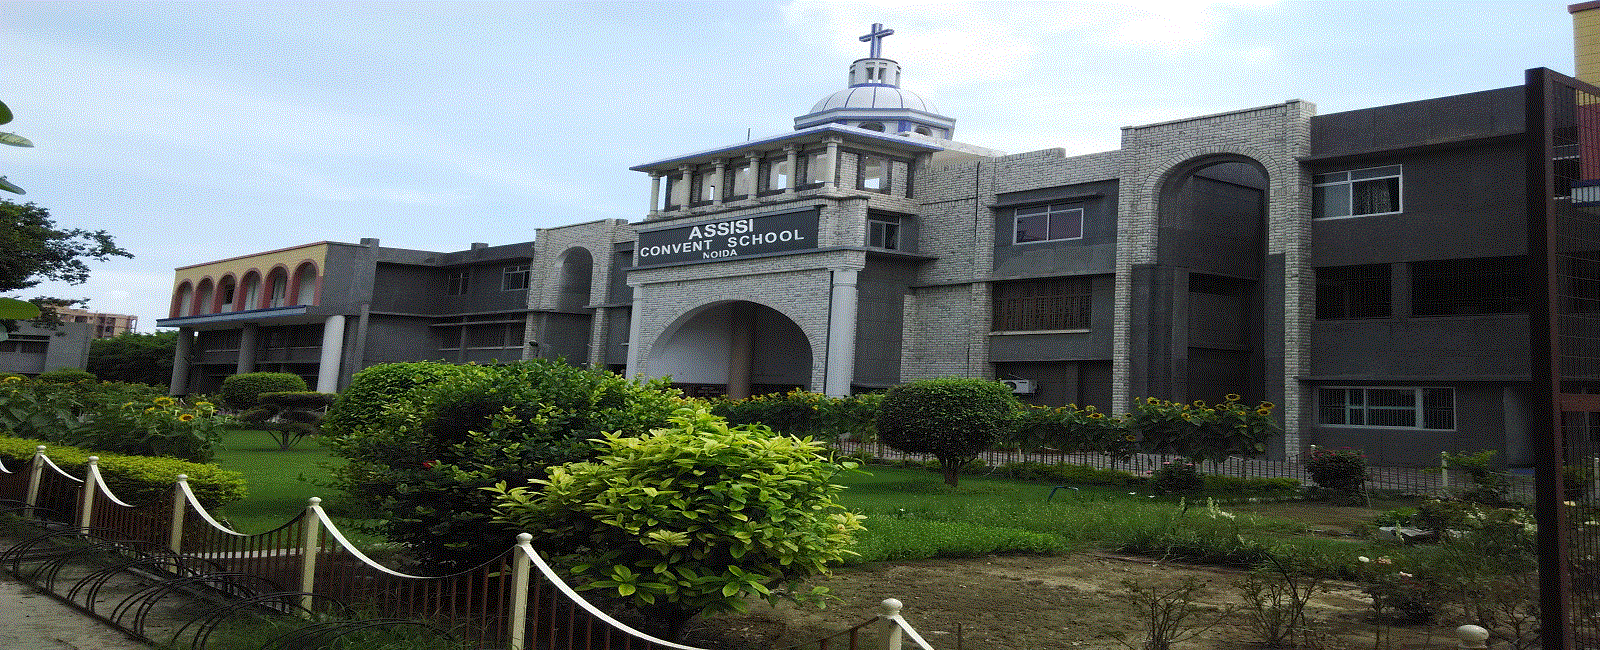 Assisi Convent School Noida Schools 03